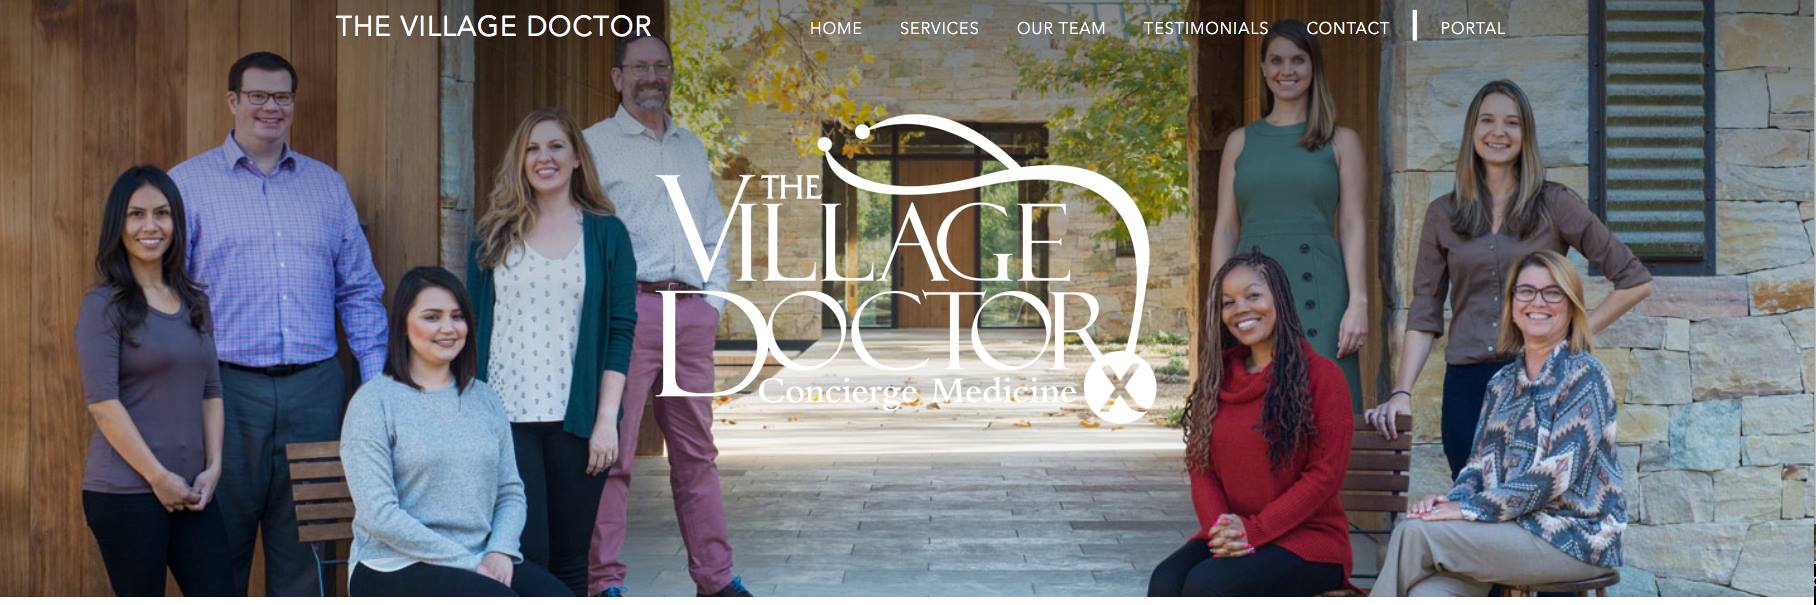 The Village Doctor - Concierge Medicine